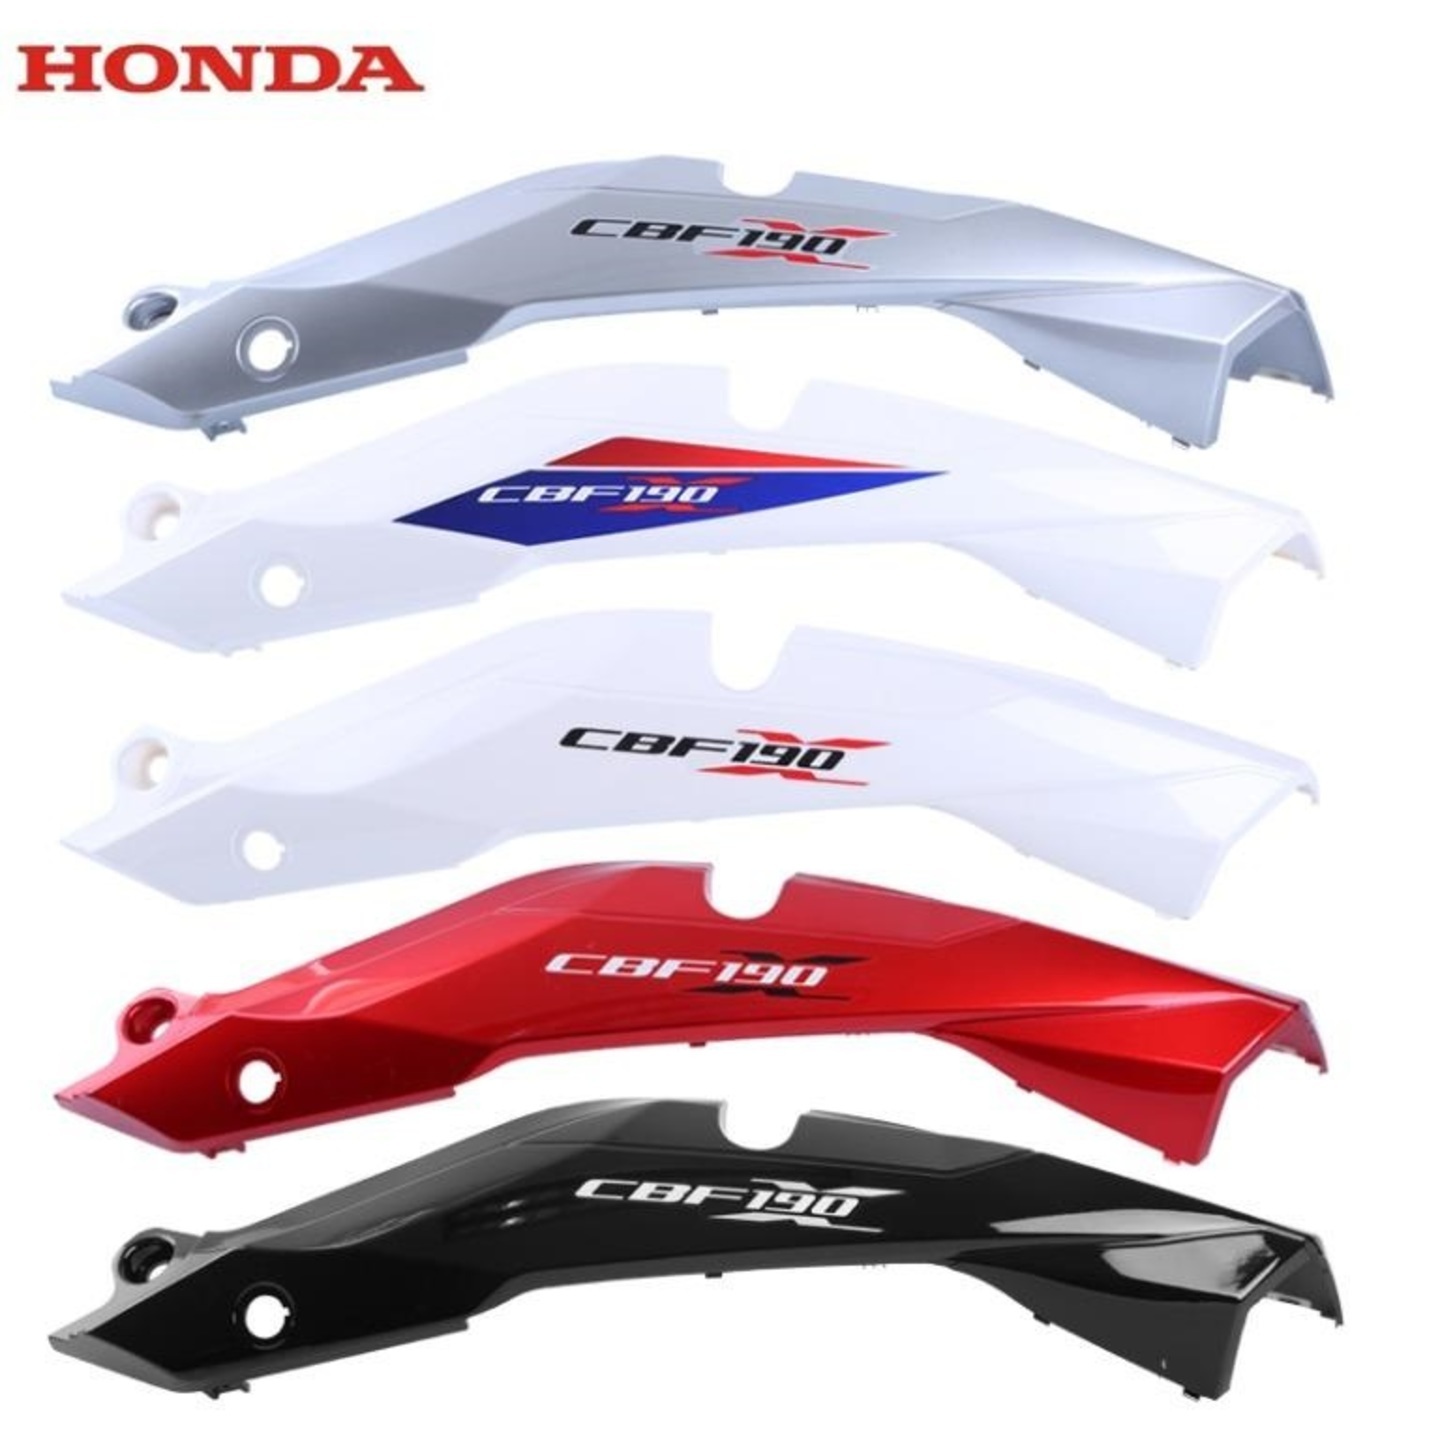 Honda CBF190X fairings covers coverset tail 